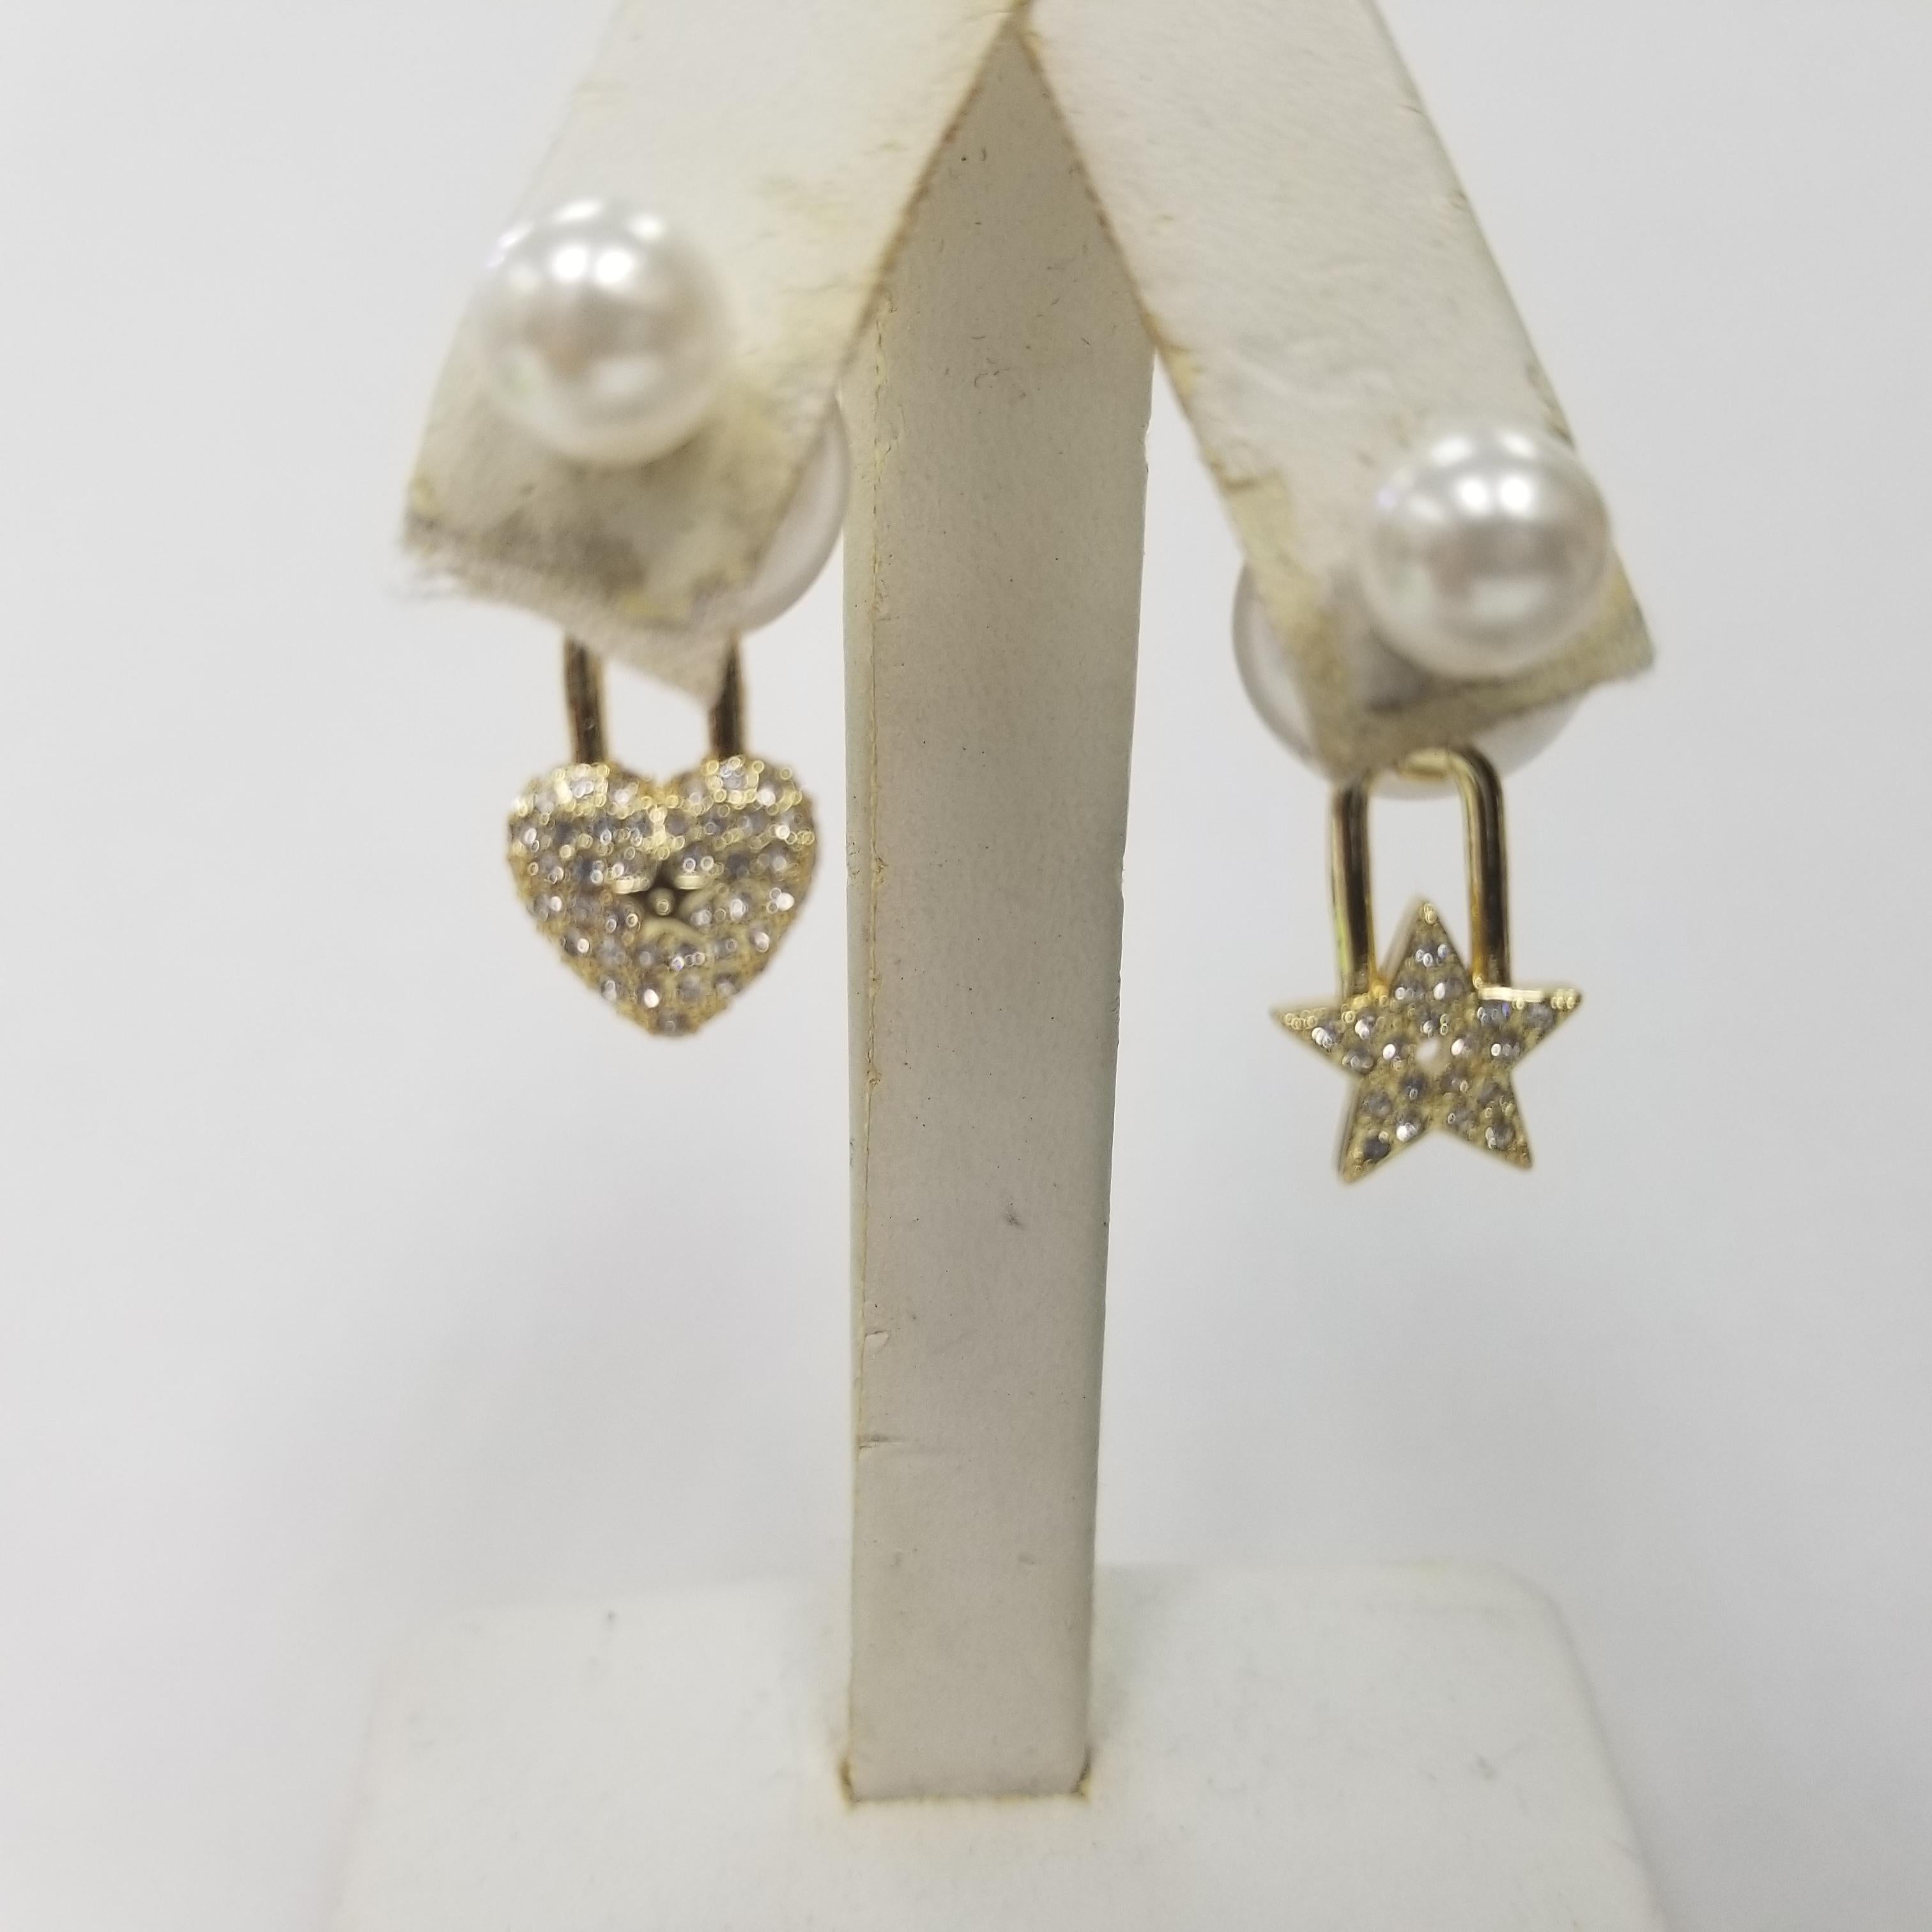 cd earrings pearl